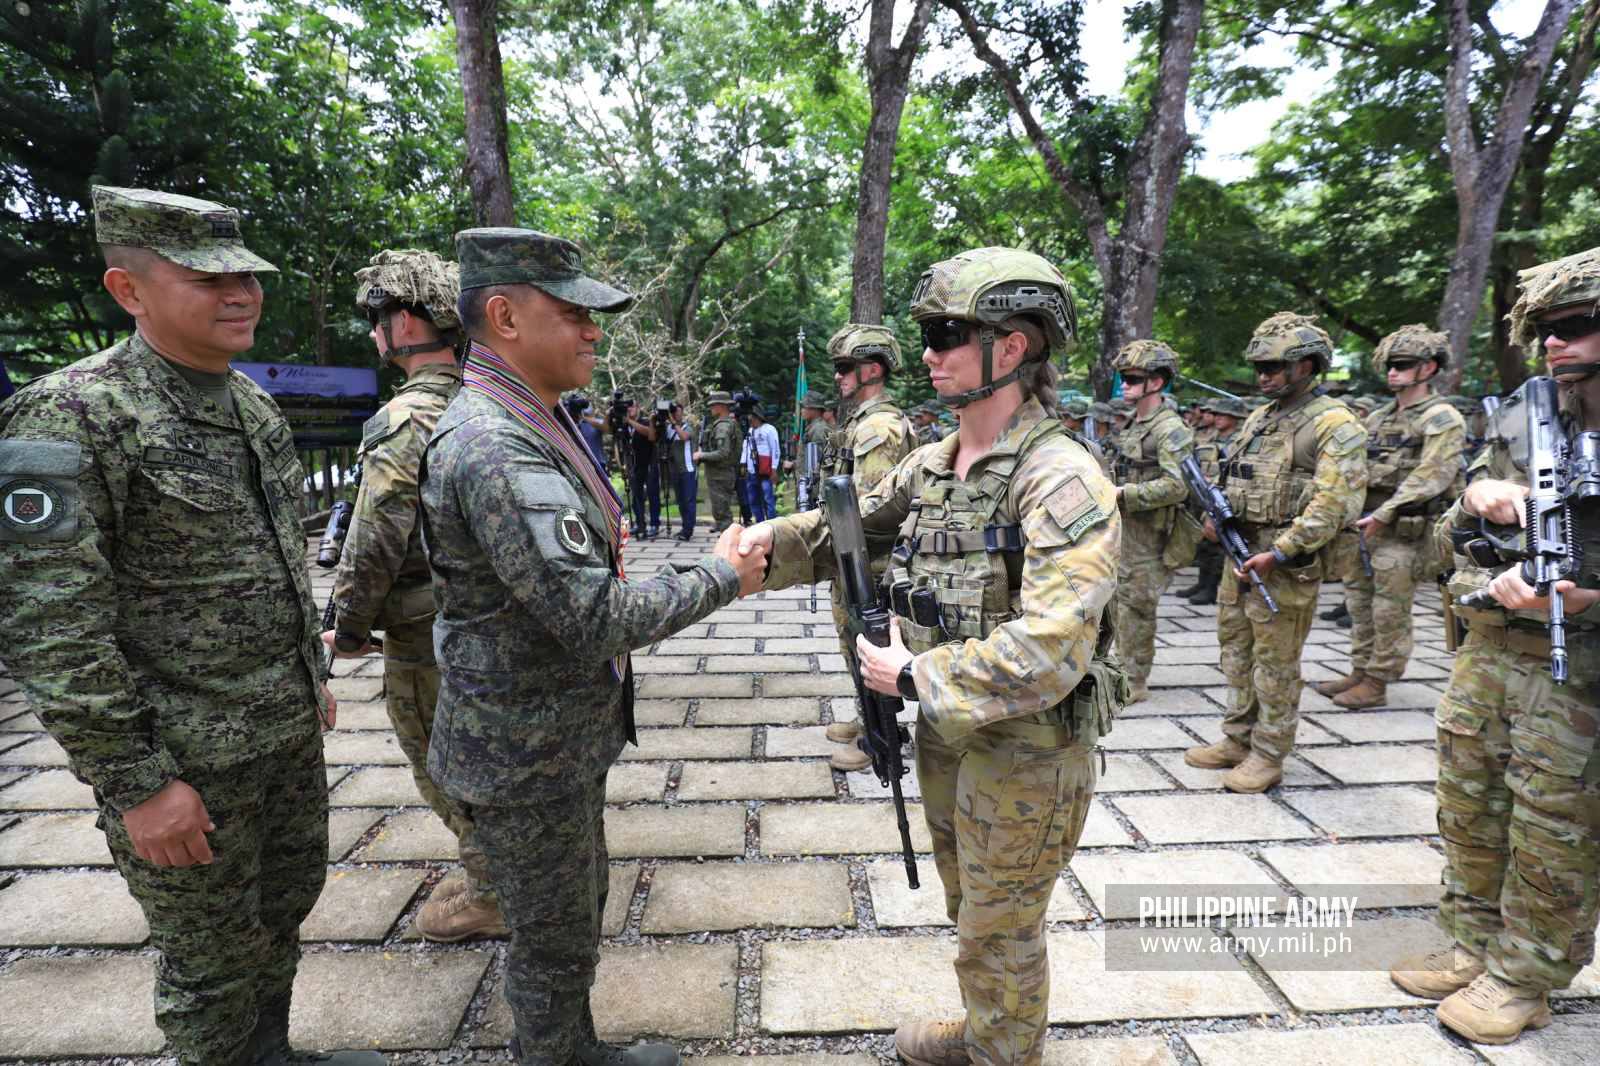 Philippine Army, Australian Army commence Exercise “Kasangga” Phase 2